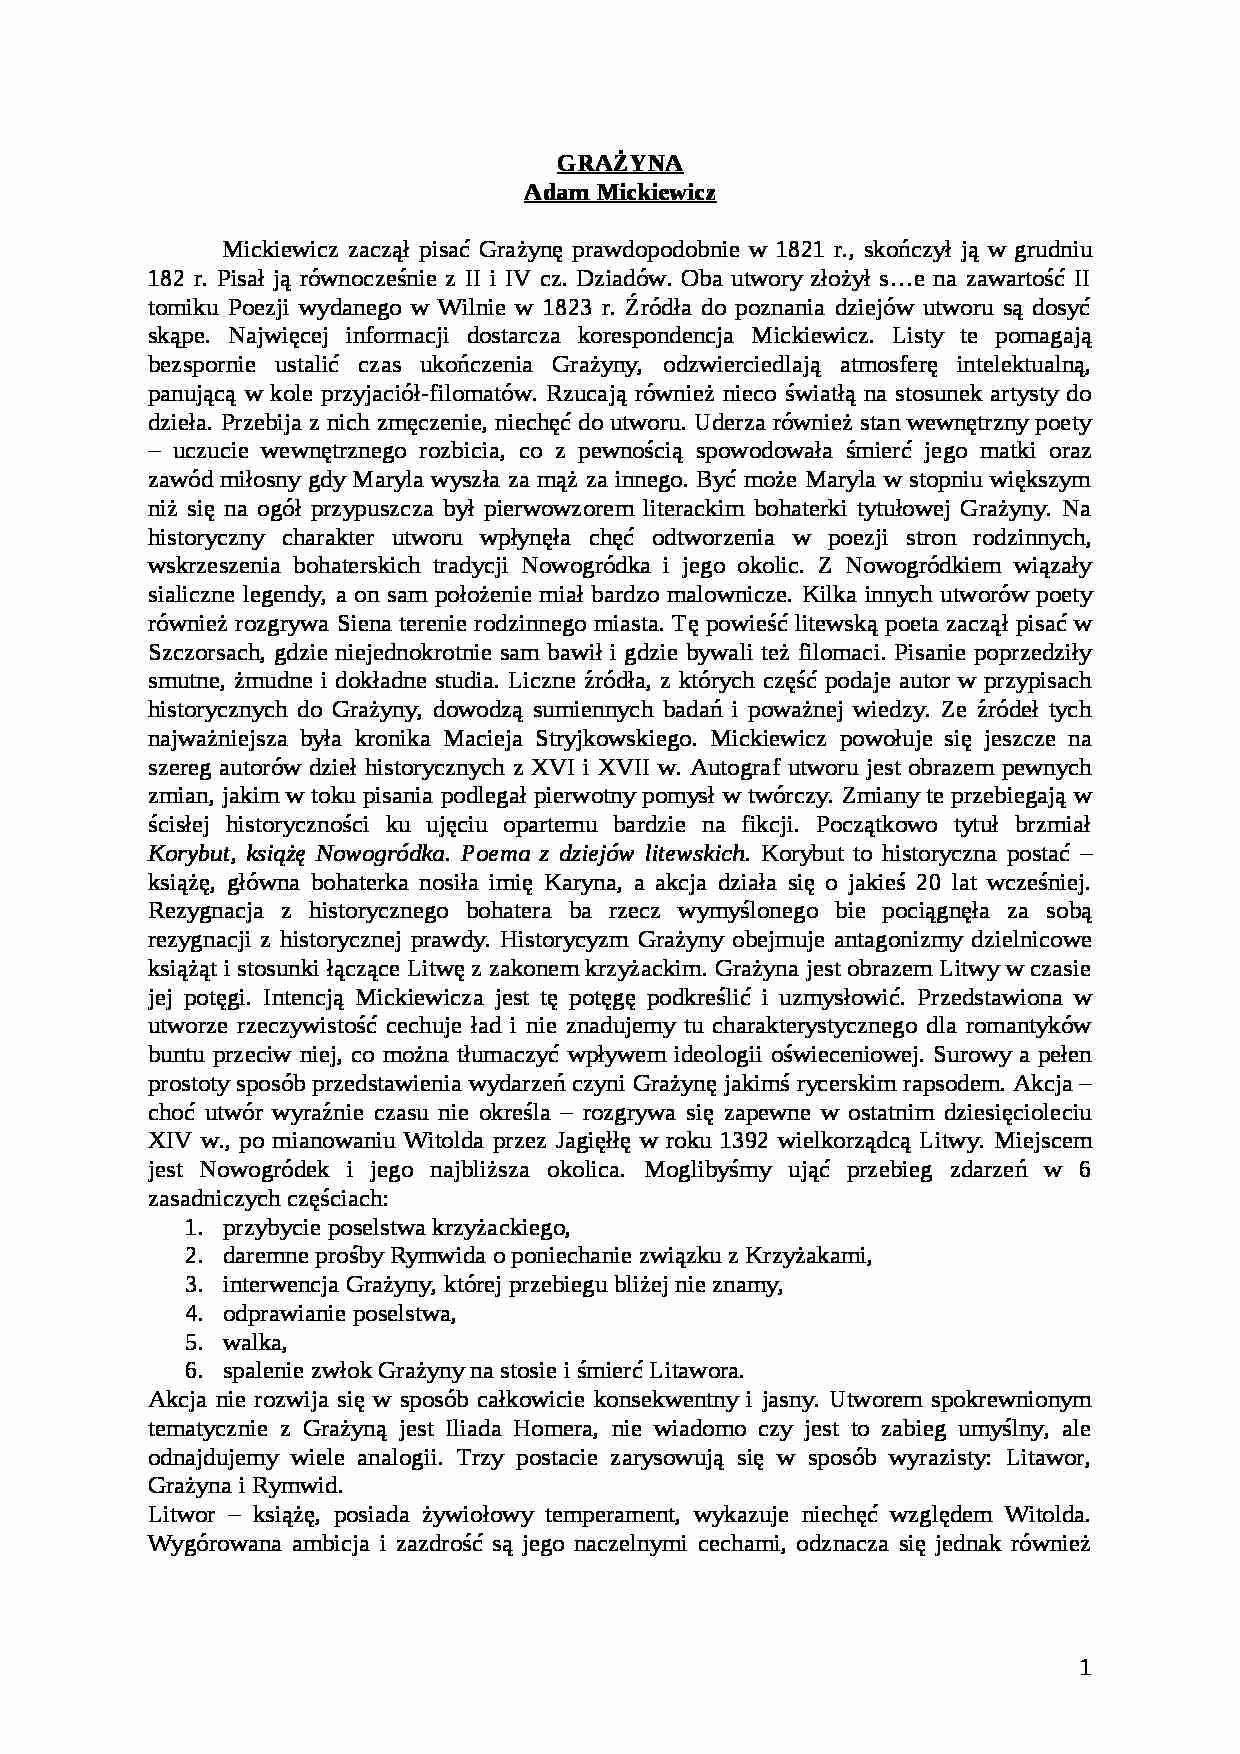 Adam Mickiewicz - Grażyna - strona 1